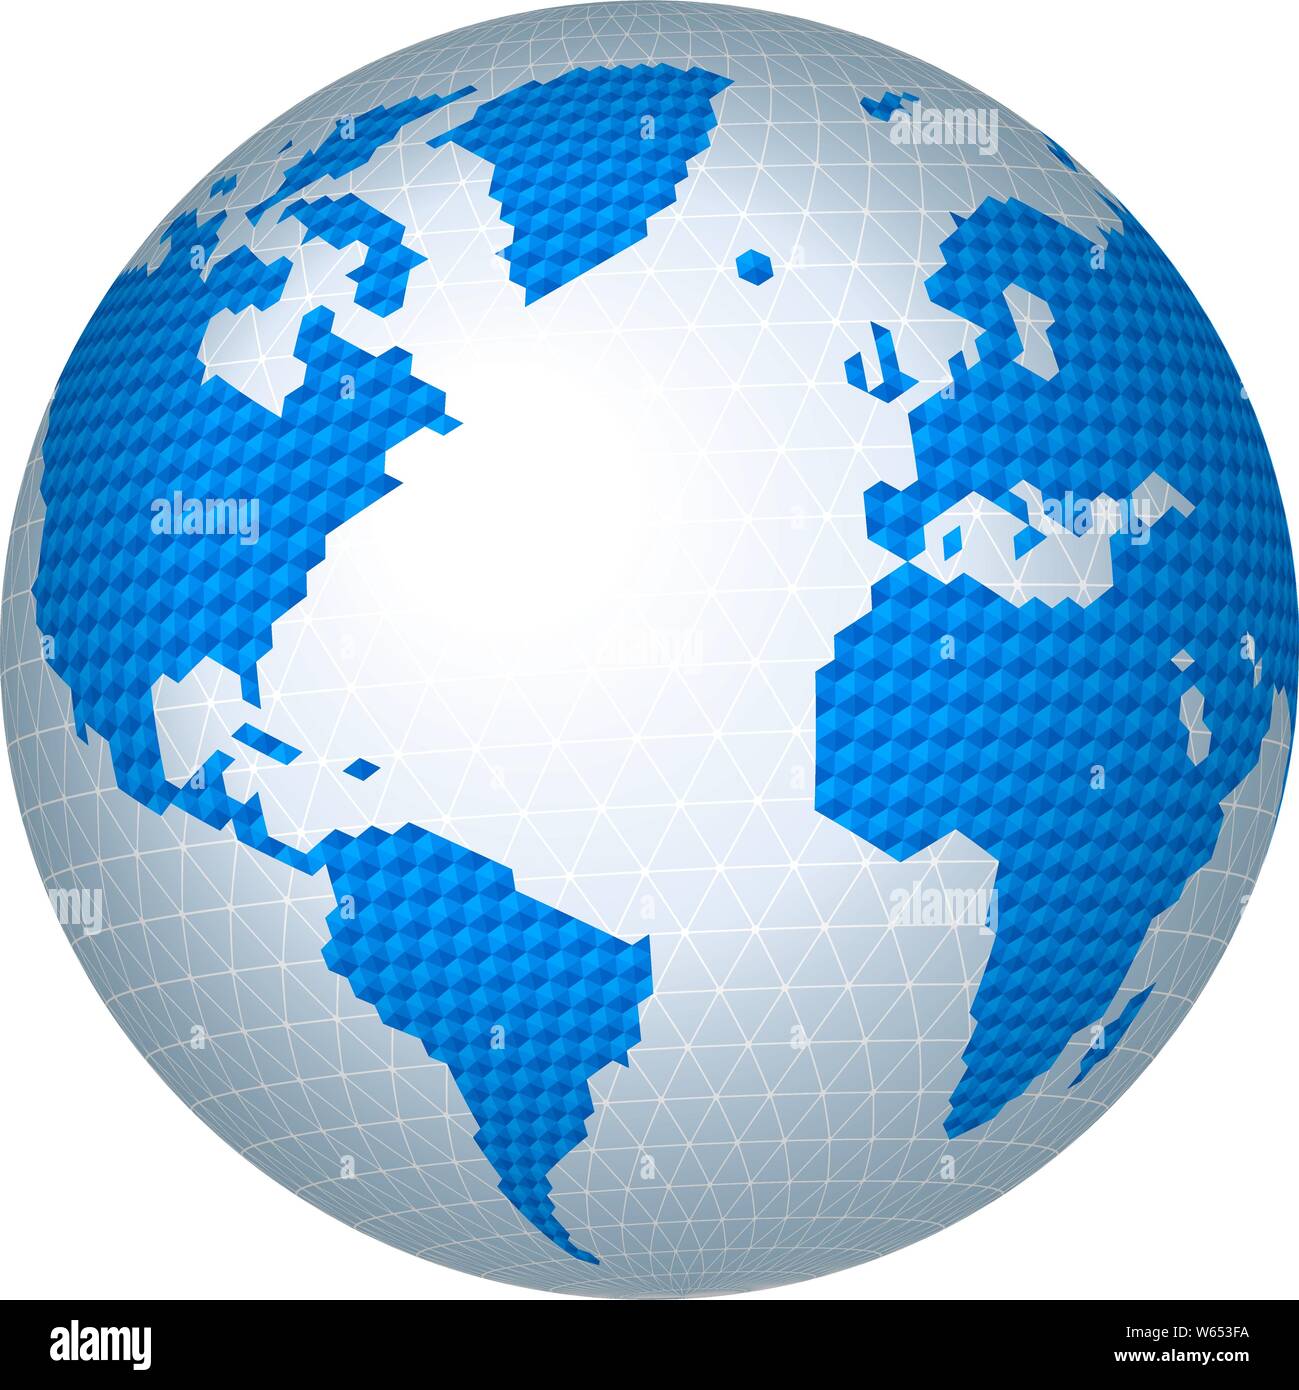 Illustrazione Vettoriale. Esagonale a ristretto mondo immagine mappa in toni di blu. Illustrazione Vettoriale